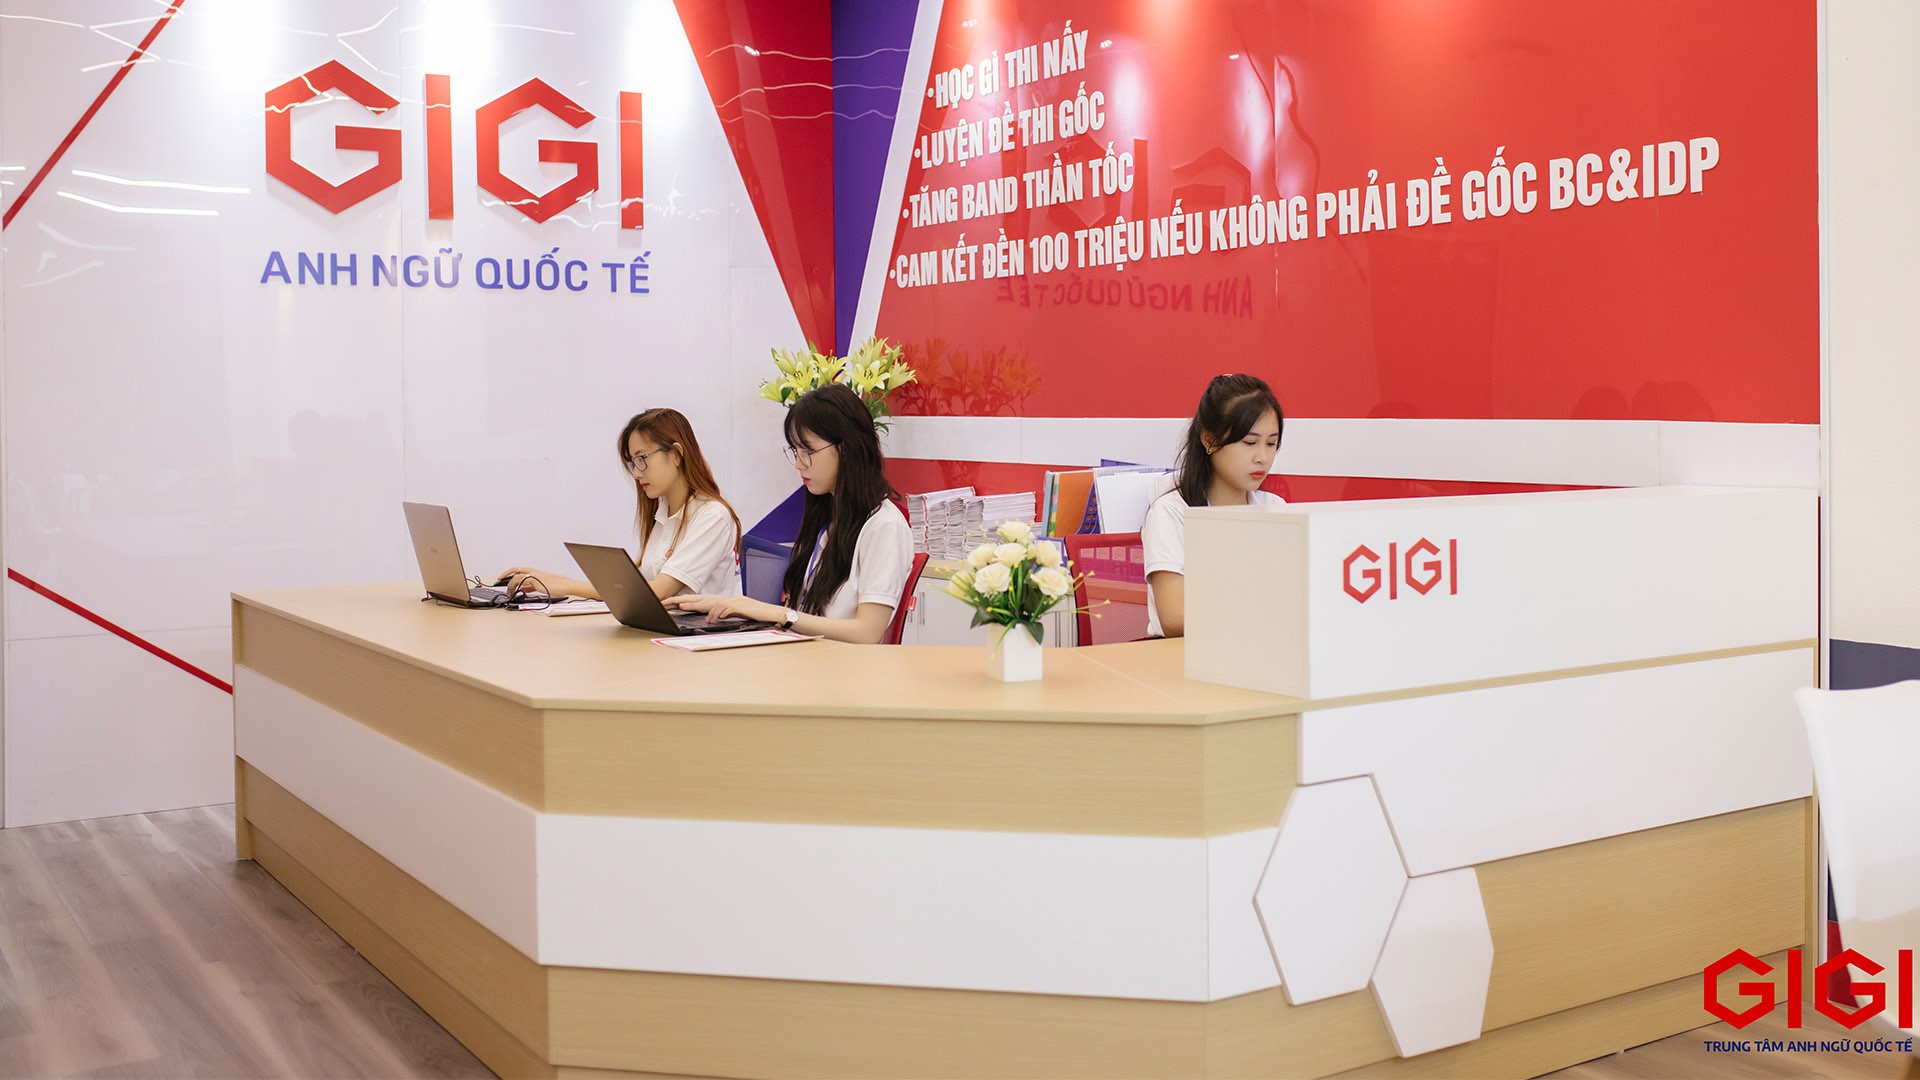 Anh ngữ Quốc tế GIGI tài trợ học bổng IELTS trị giá 2 tỷ đồng cho 100 bạn trẻ Hải Phòng